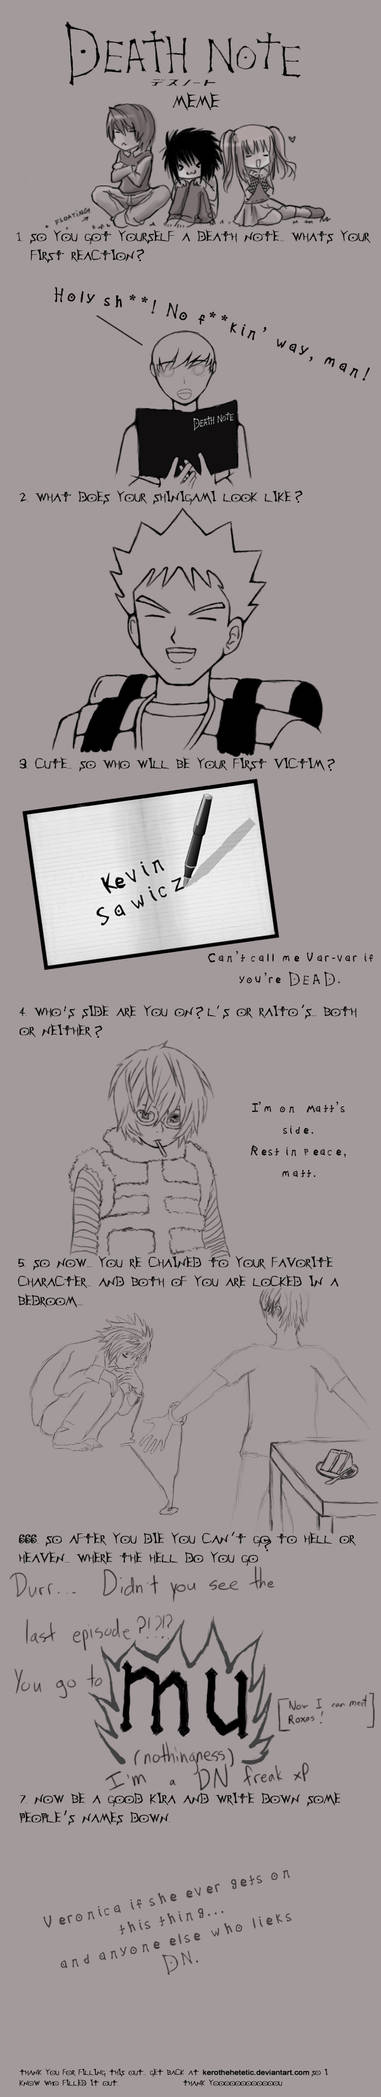 Death Note Meme